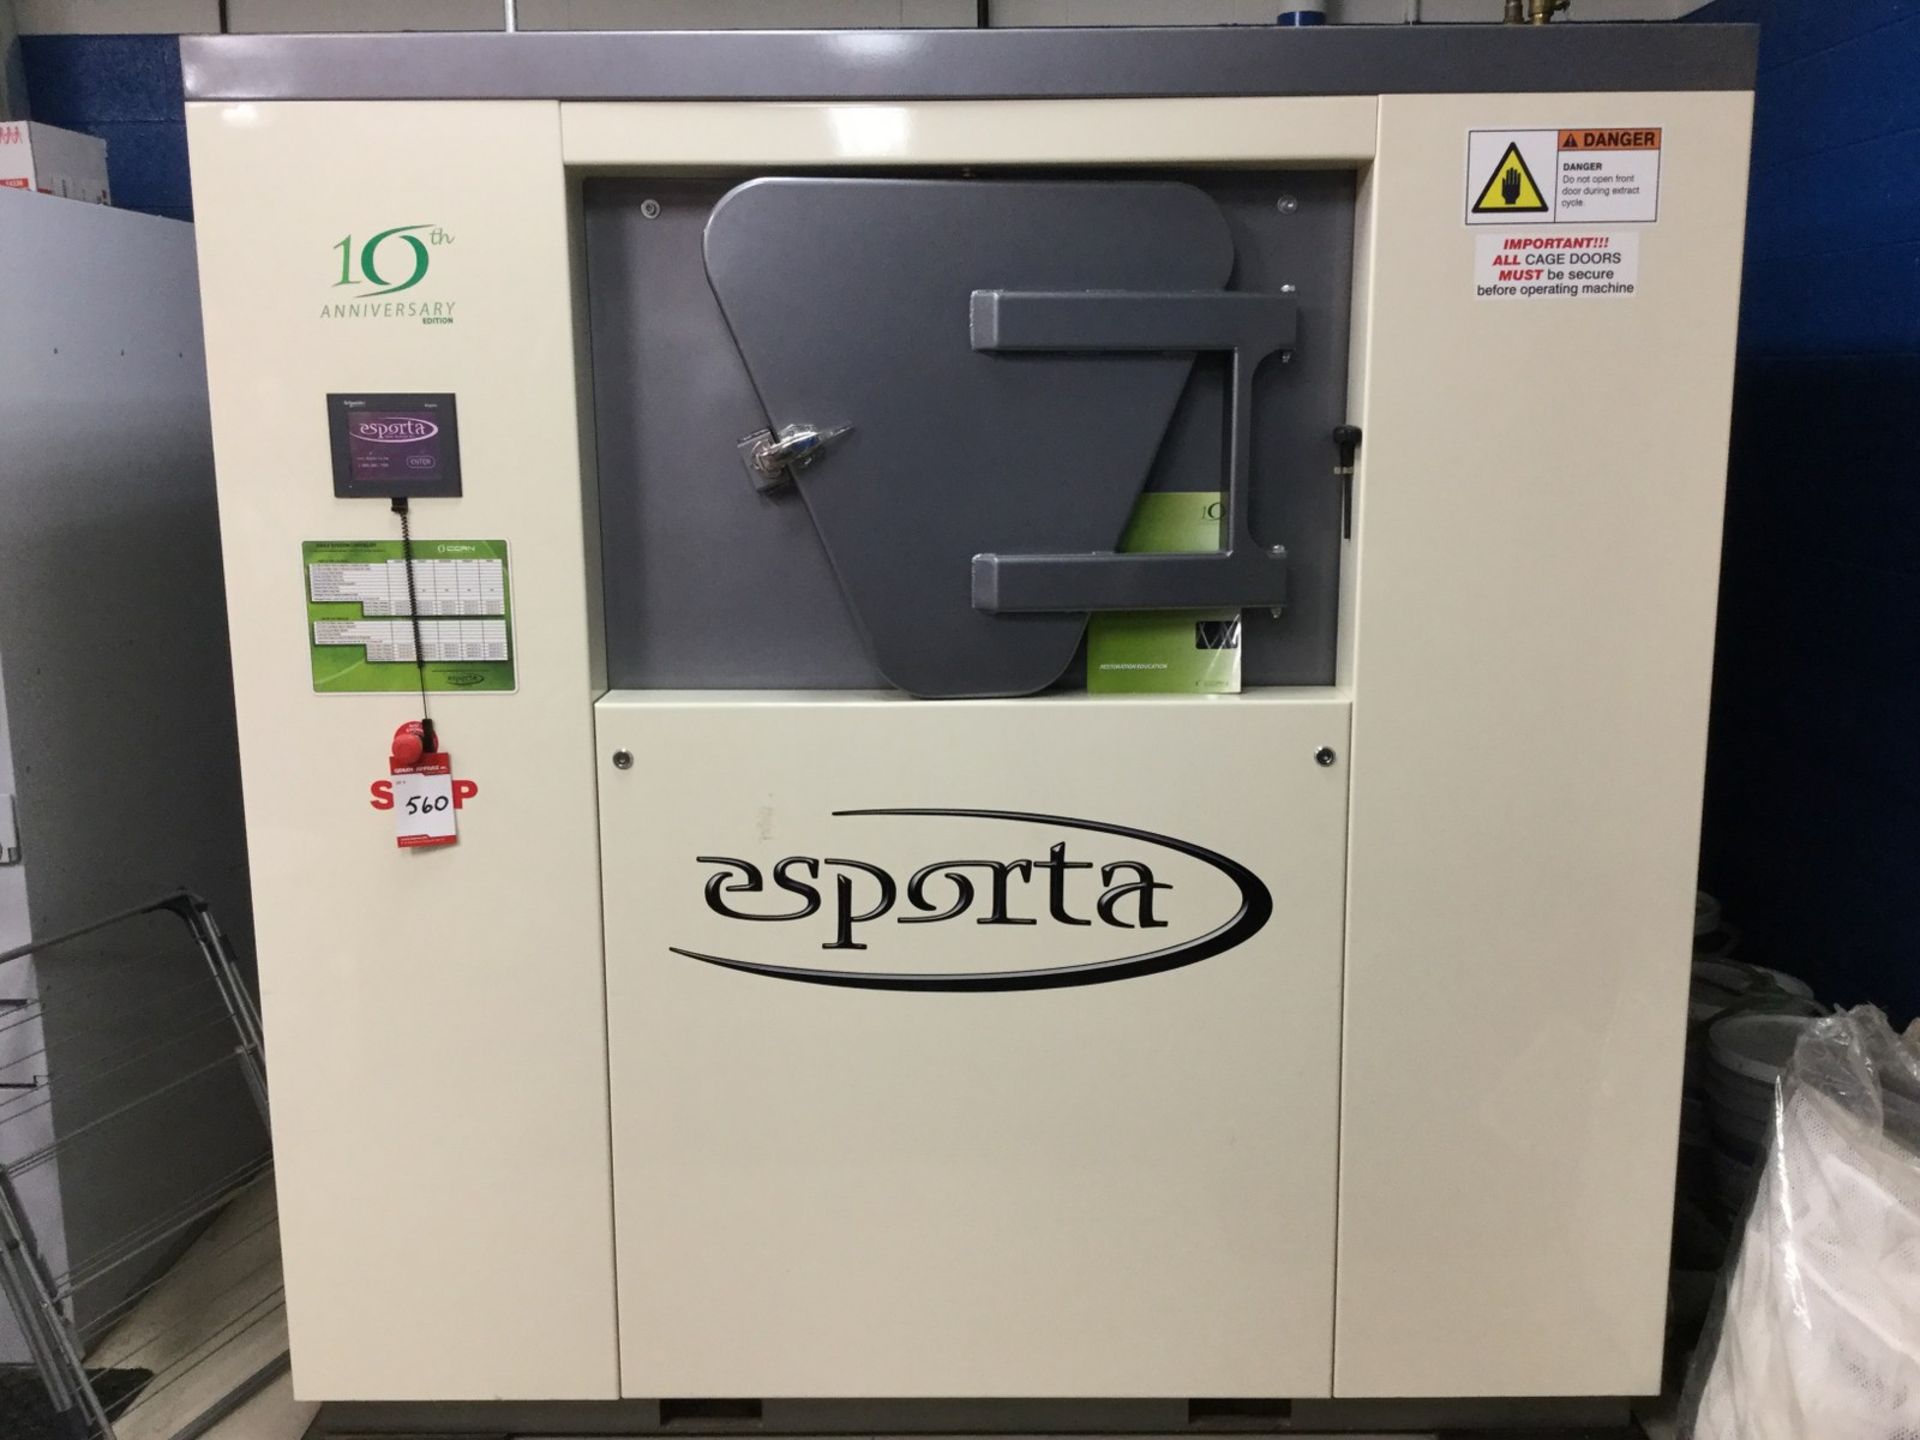 1 X ESPORTA WASH SYSTEMS -INDUSTRIAL WASHING MACHINE - MODEL # ES-3300